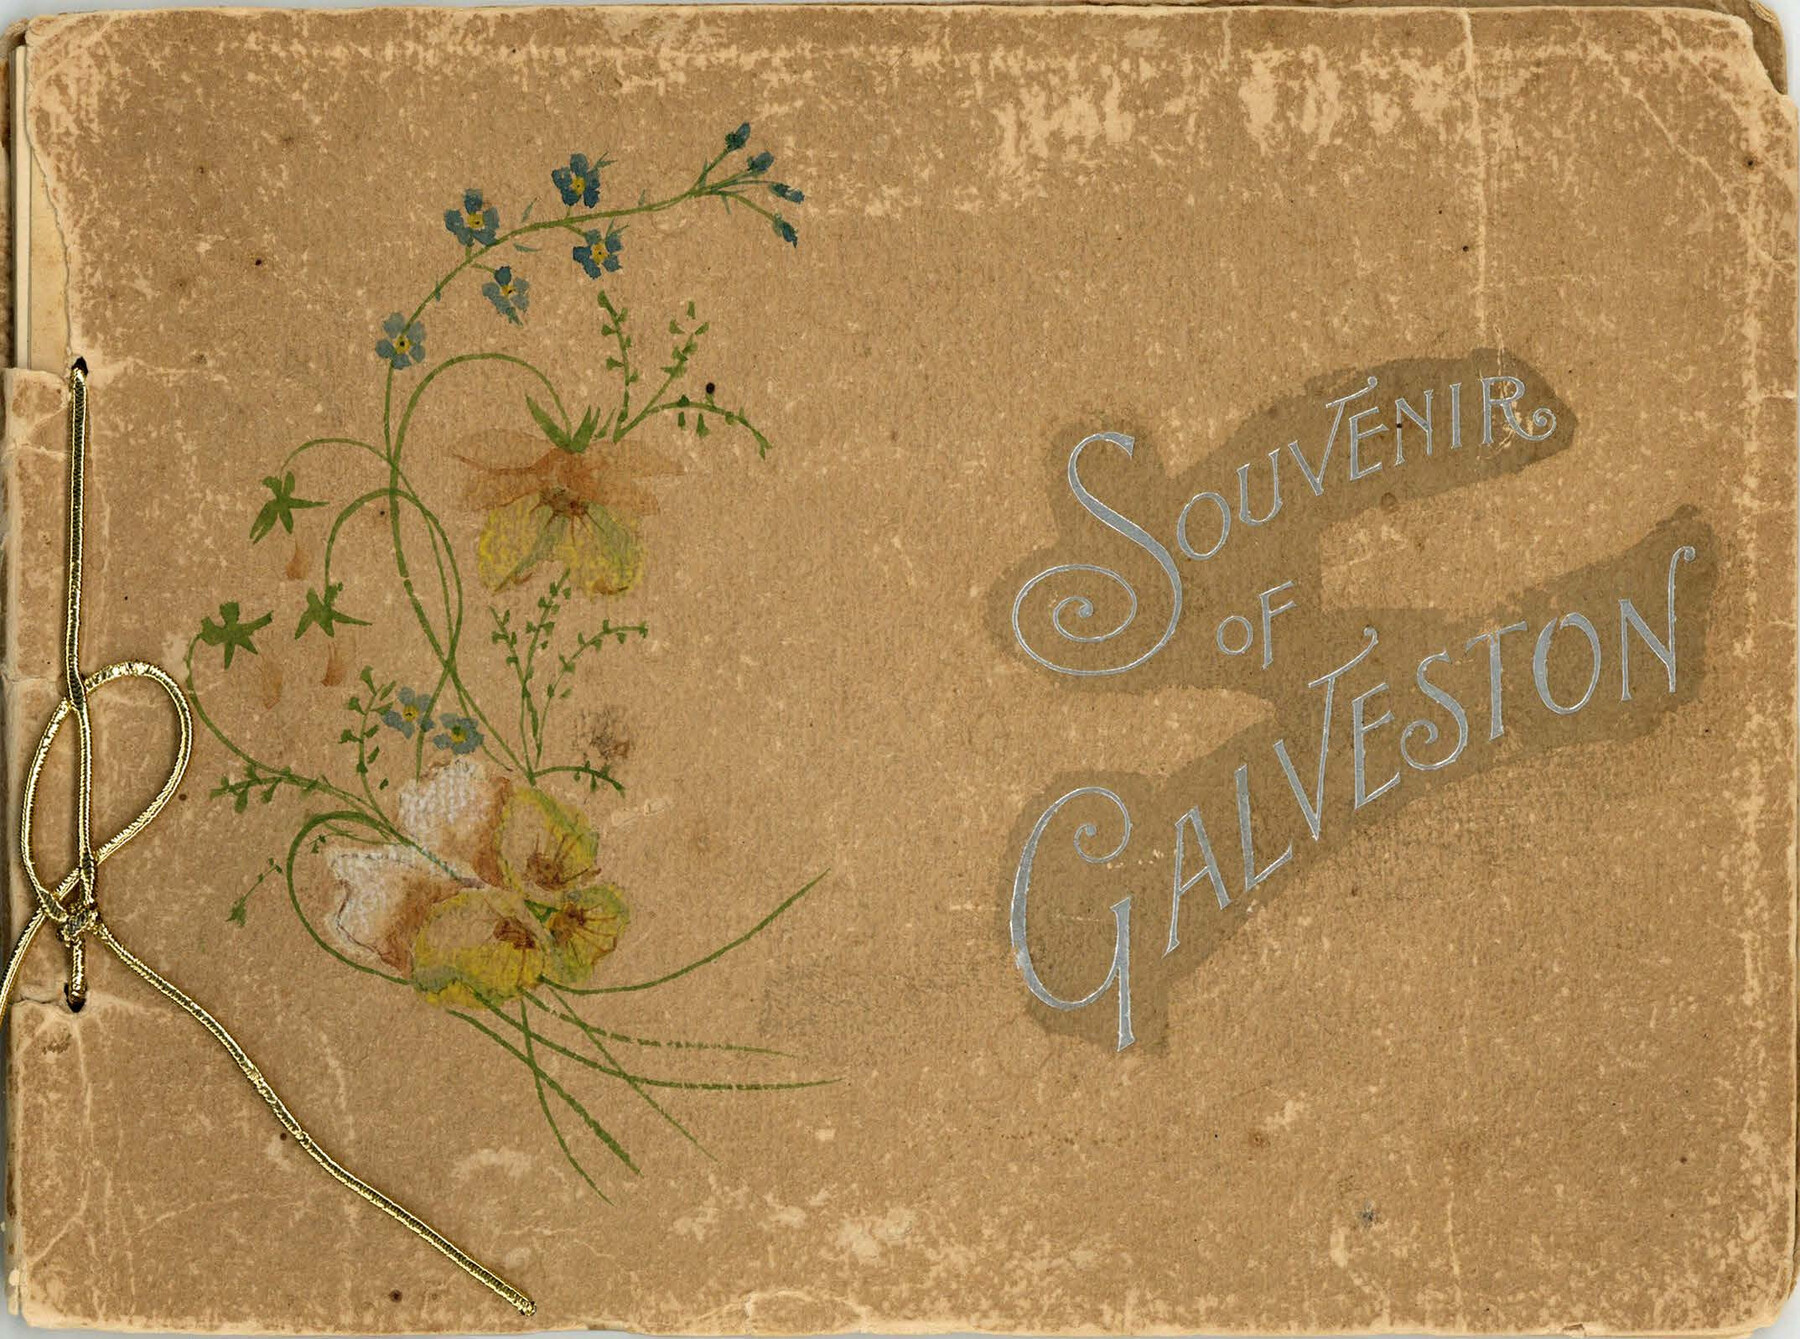 97049, Souvenir of Galveston